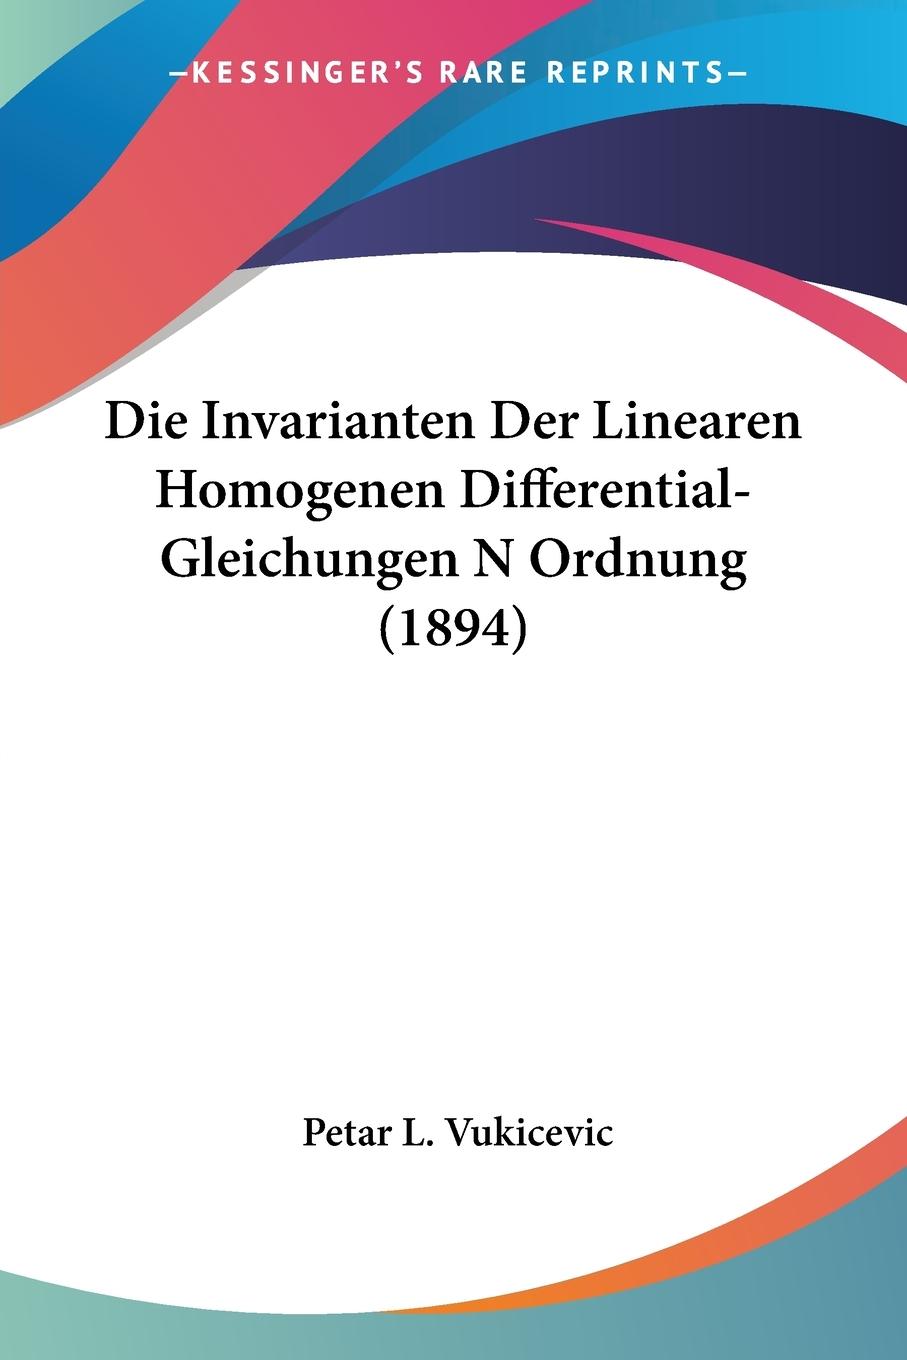 Die Invarianten Der Linearen Homogenen Differential-Gleichungen N Ordnung (1894) - Vukicevic, Petar L.